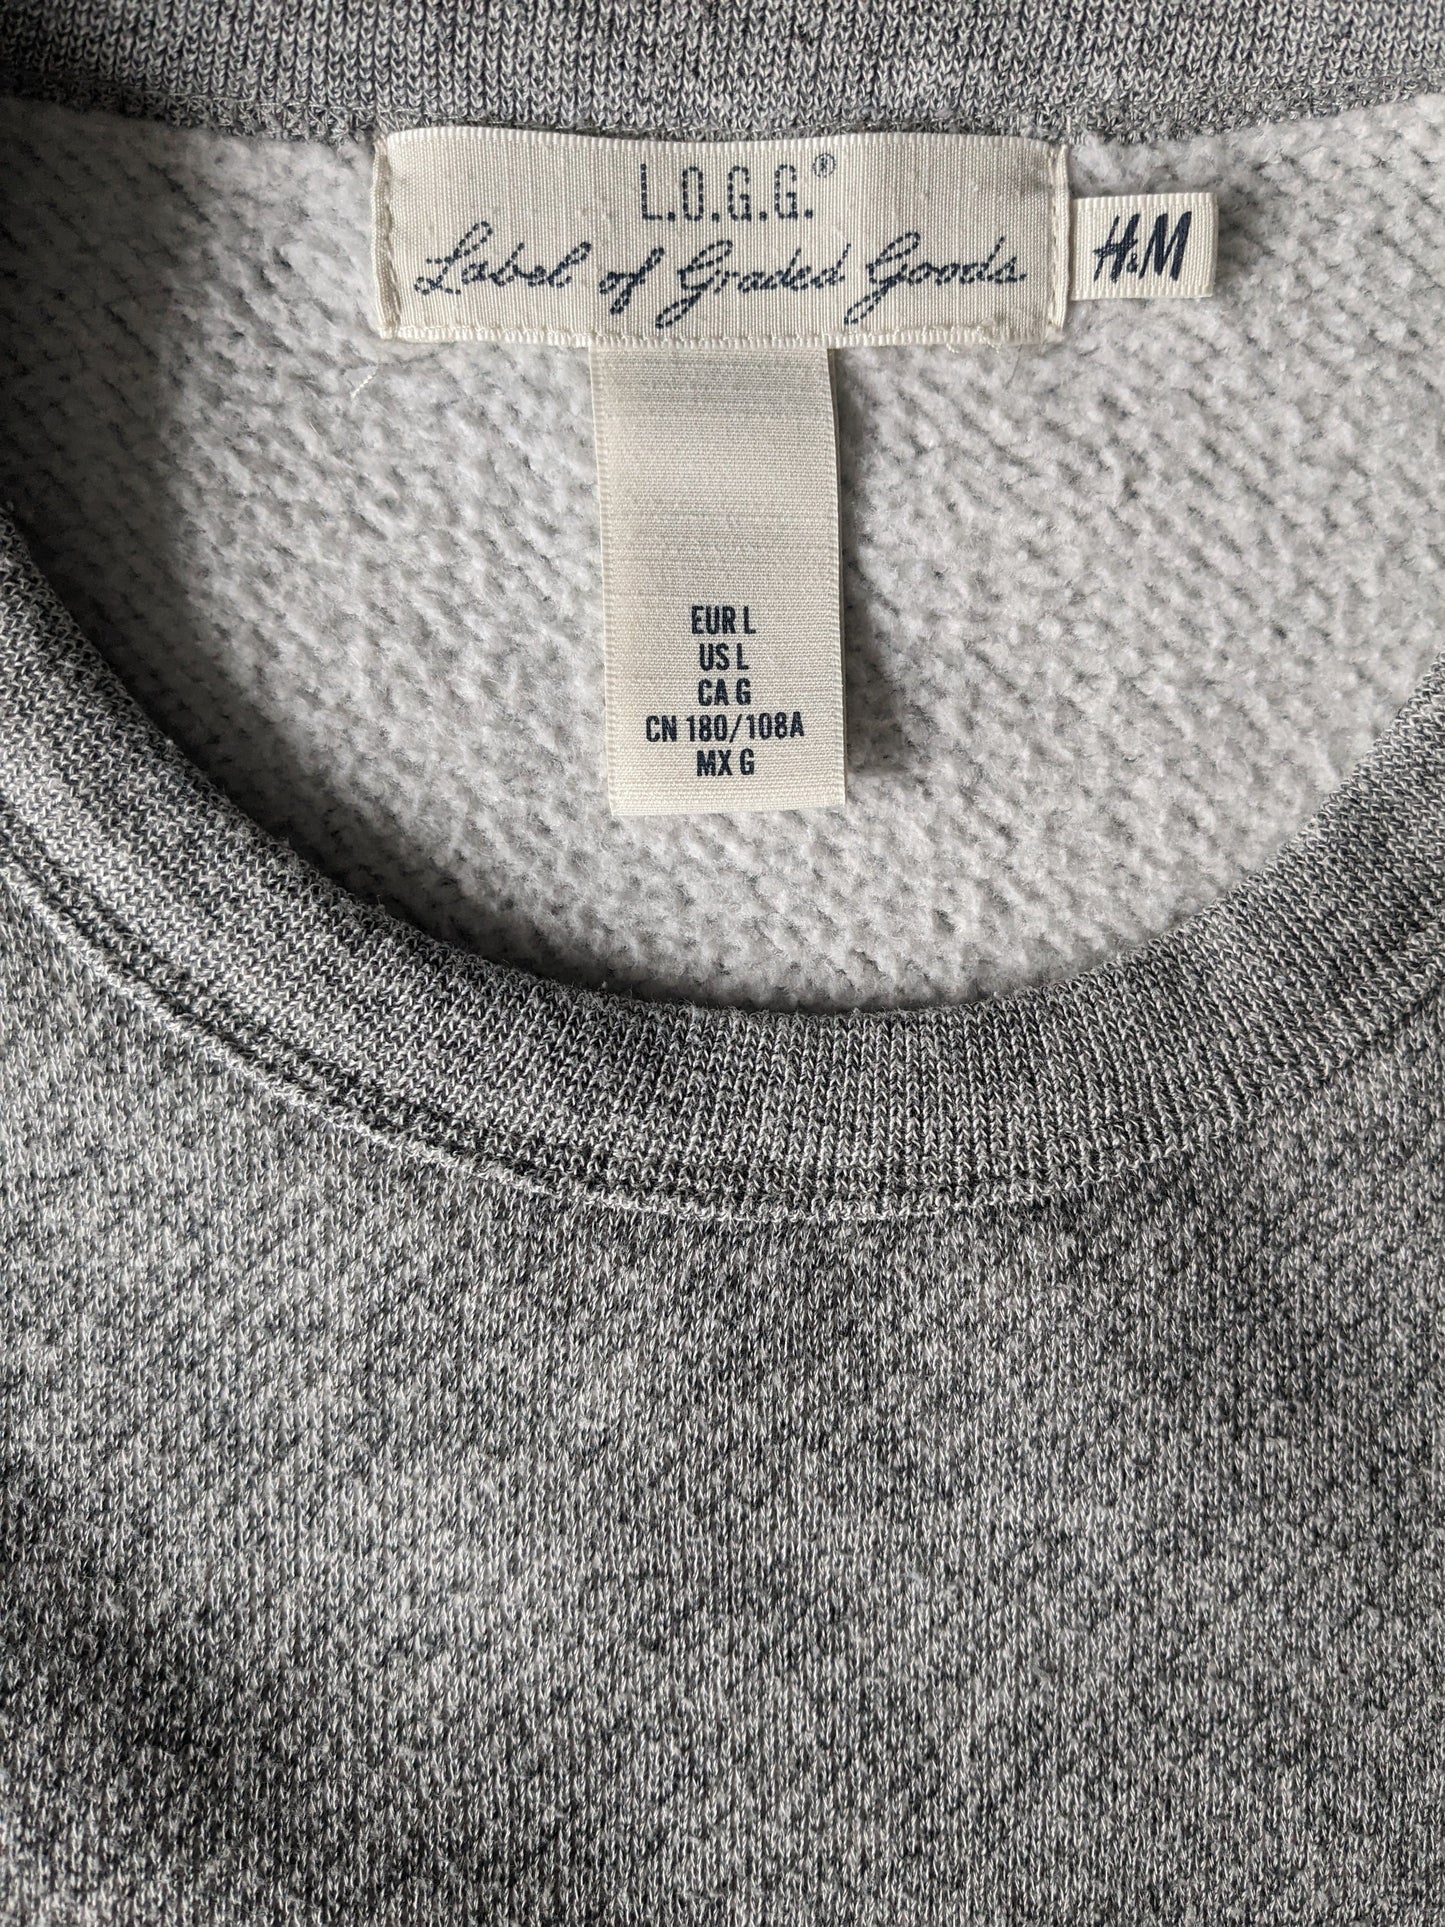 H & M -Pullover. Graue gemischte Größe L.